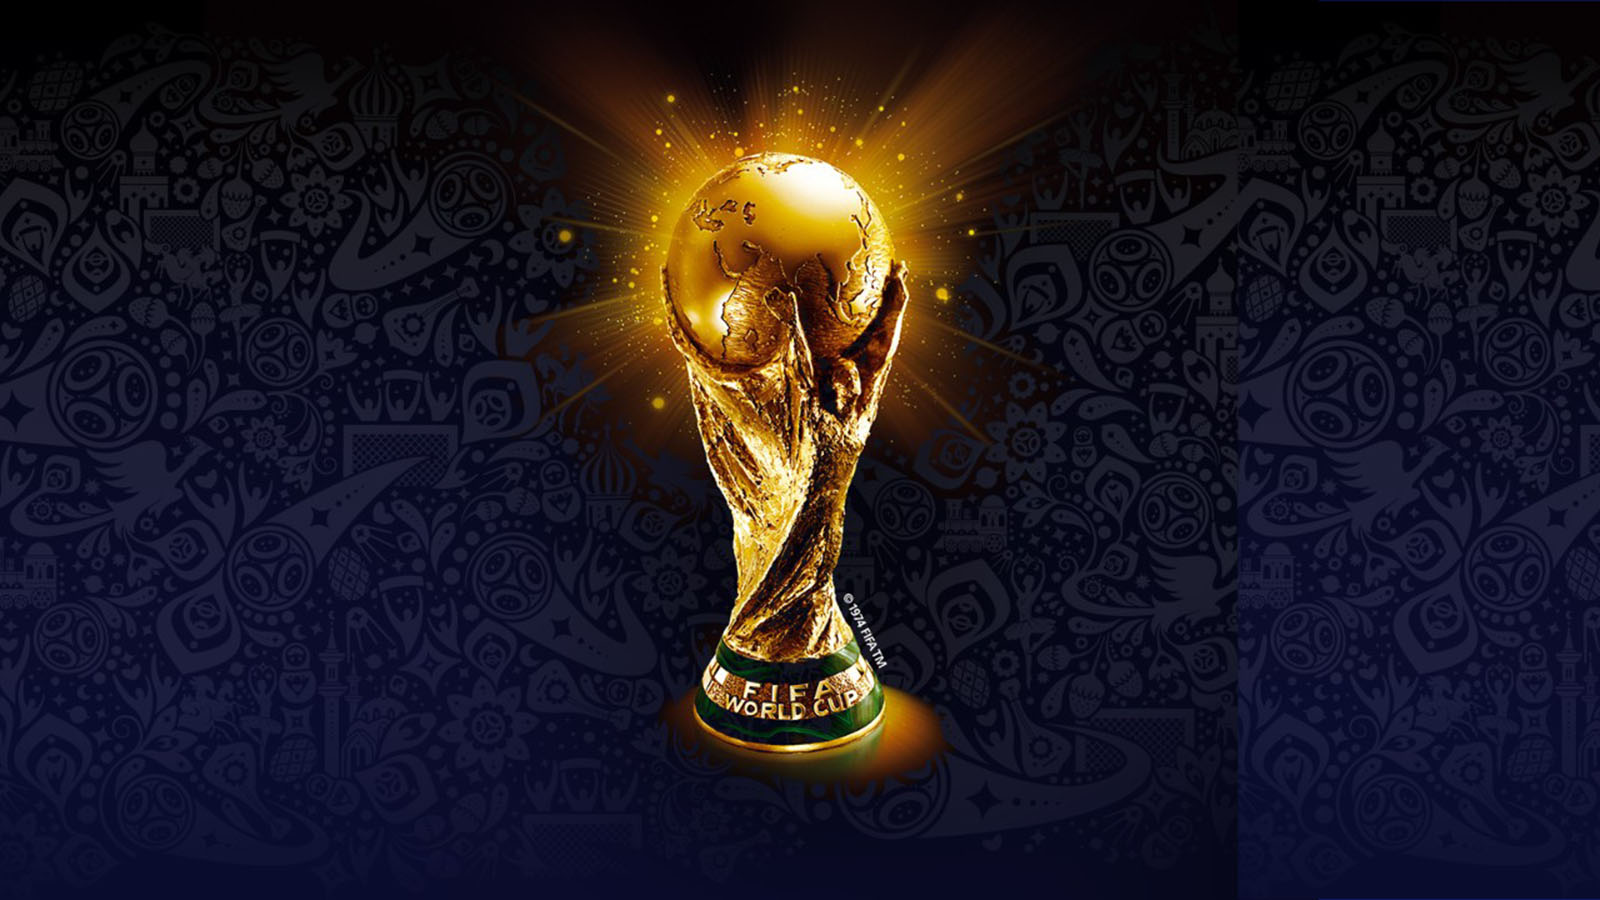 Copa do Mundo 2018: o que a história indica sobre quem deve ser